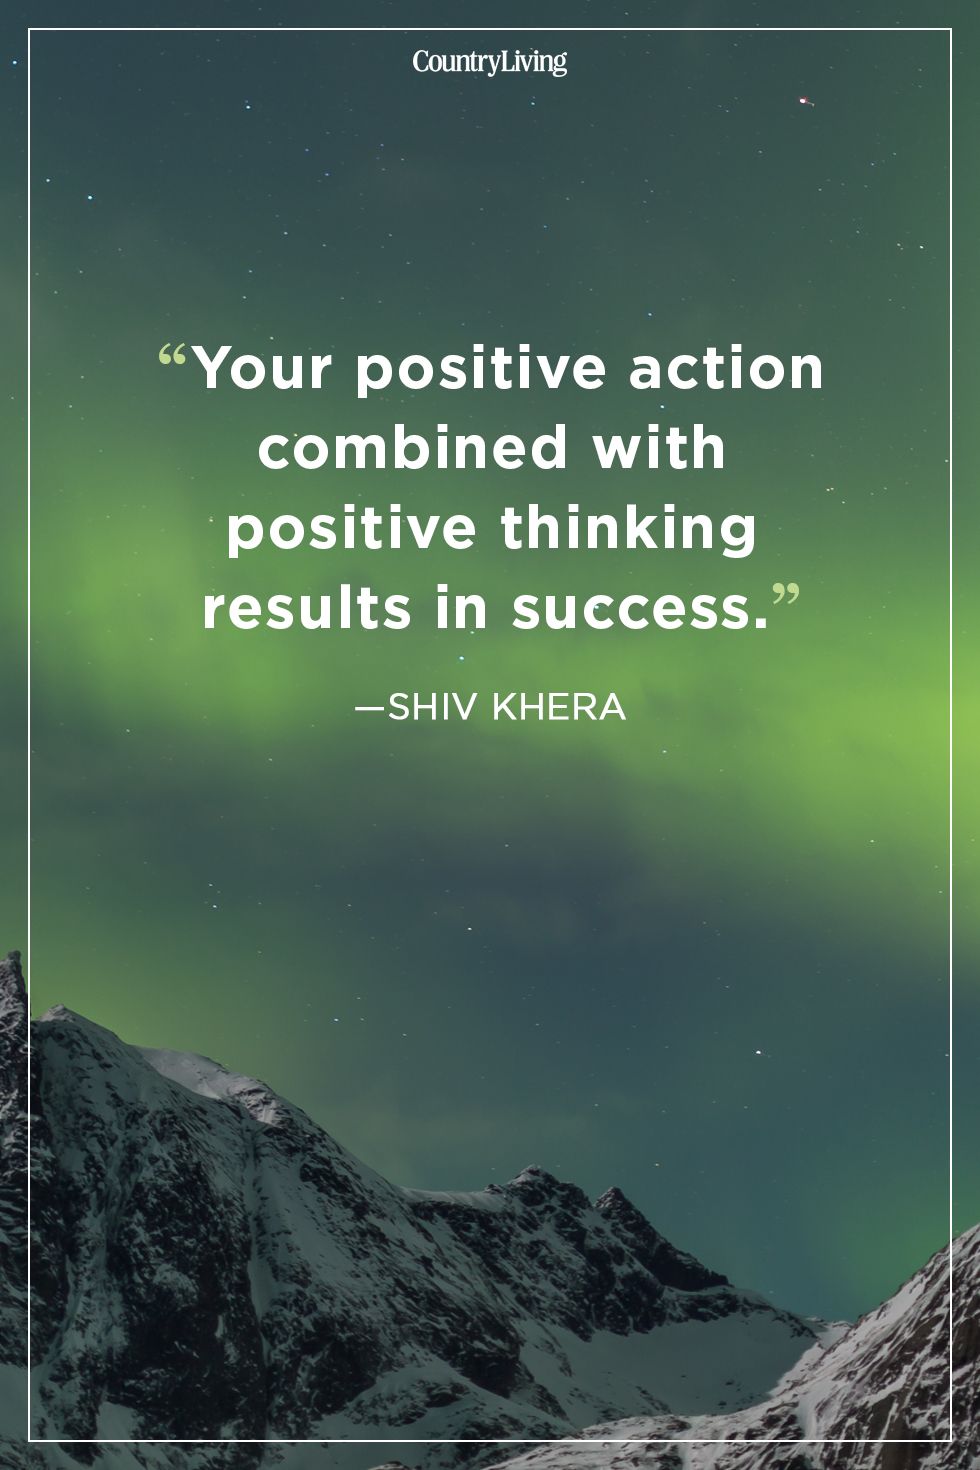 Good Quotes About Success - KibrisPDR